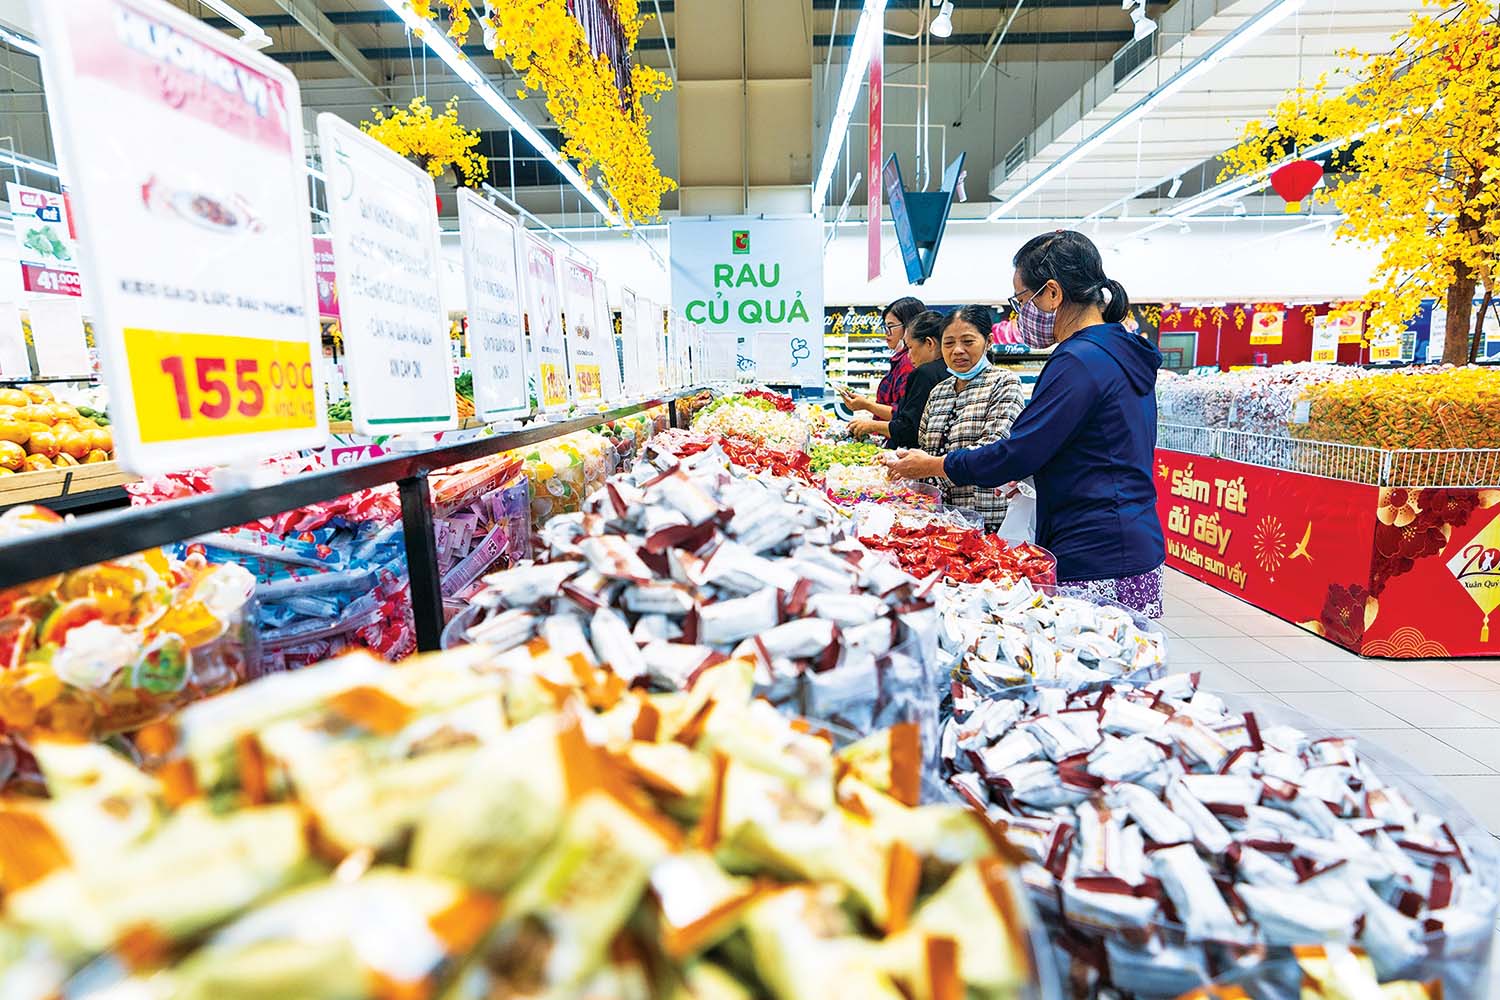 Hàng hóa tại các hệ thống siêu thị đang rất dồi dào, đáp ứng nhu cầu tiêu dùng dịp Tết